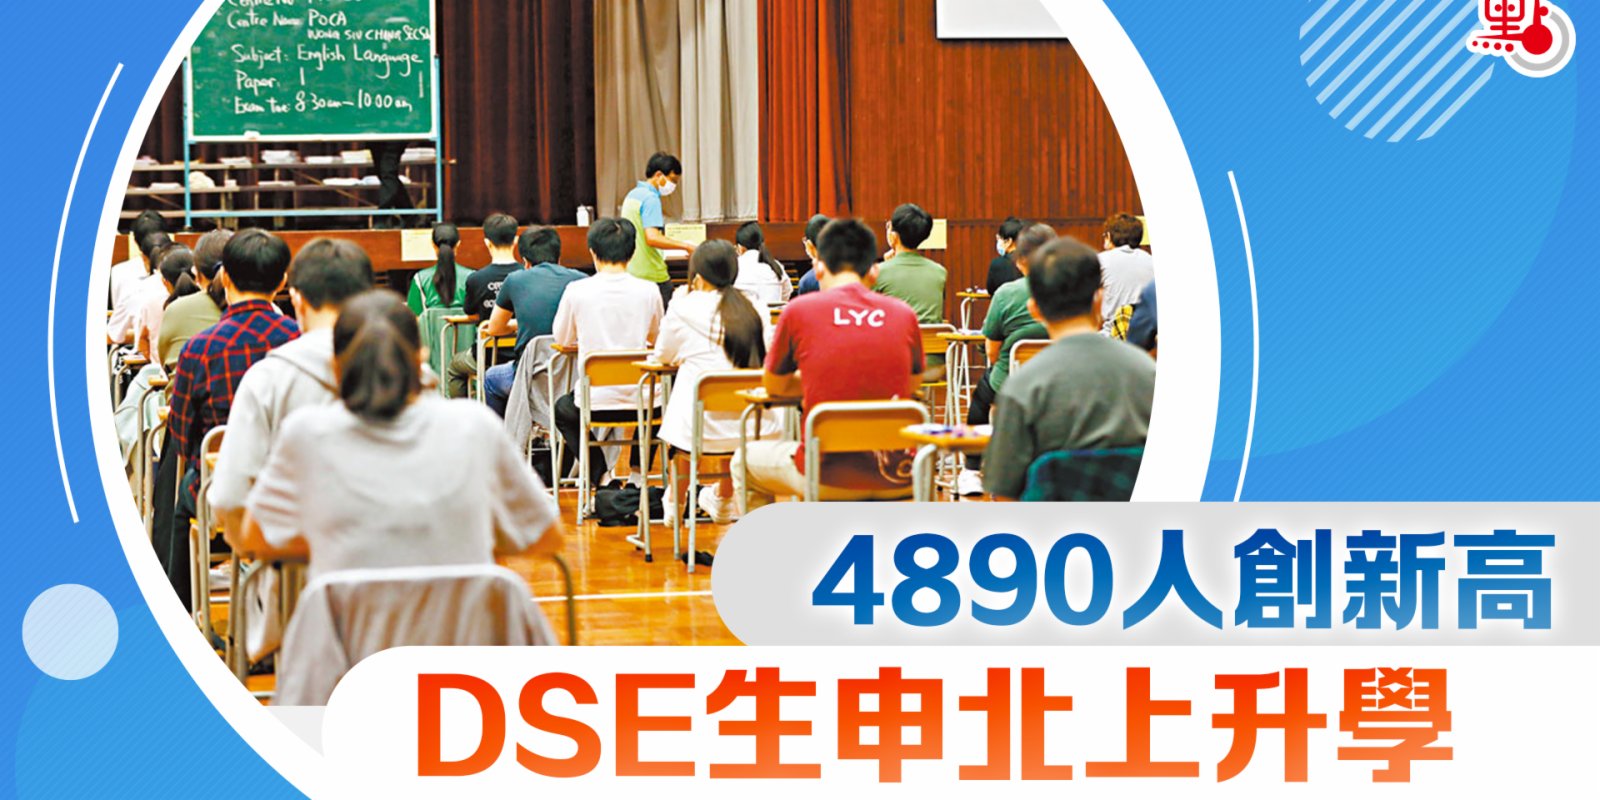 DSE生申北上升學　 4890人創新高